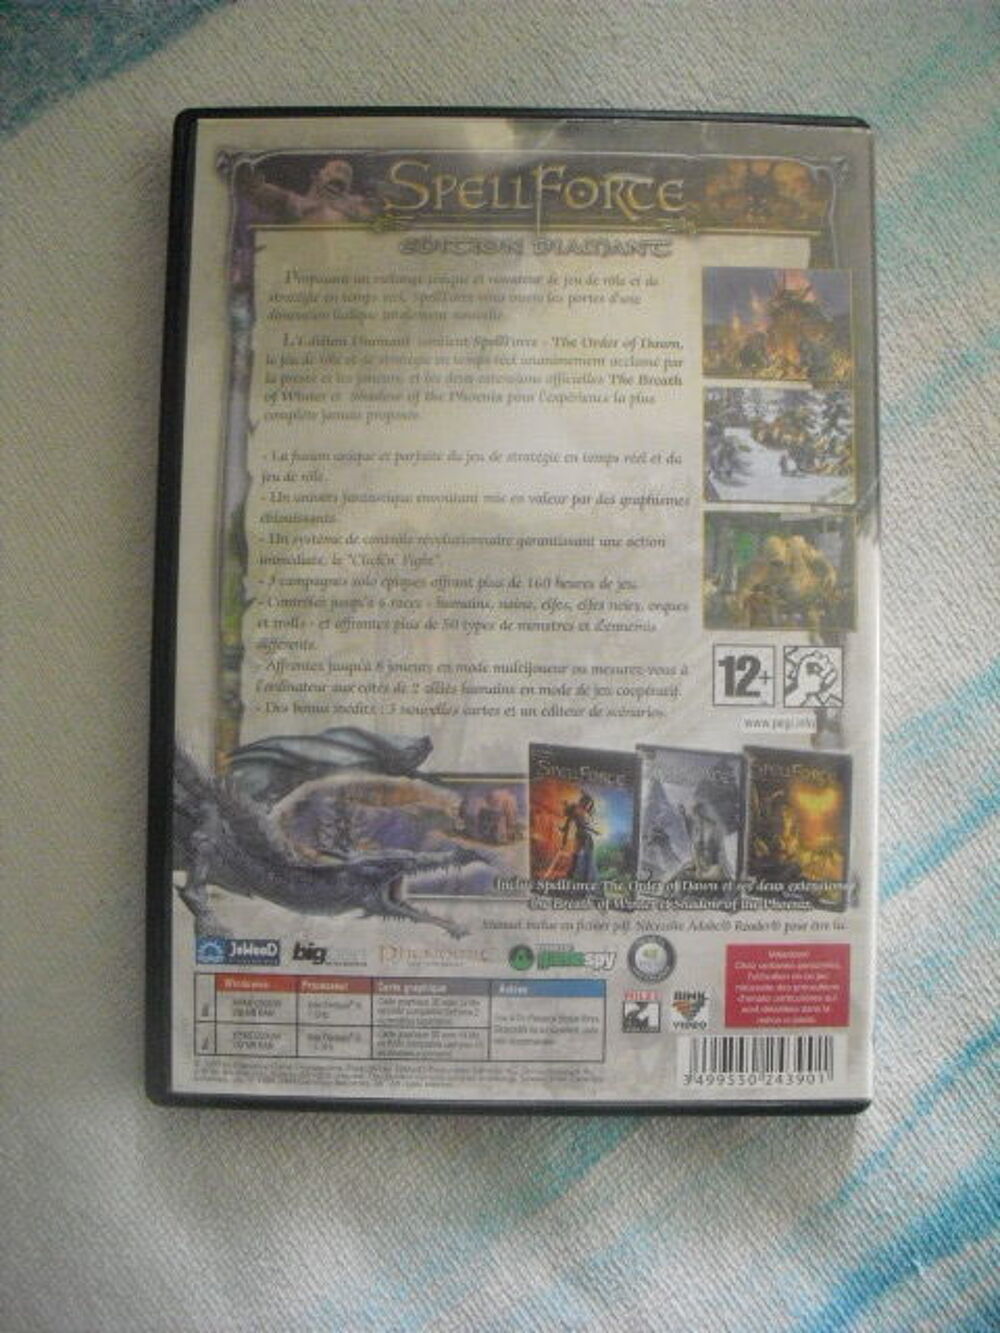 JEU SpellForce - Edition Diamant 4CD
Consoles et jeux vidos